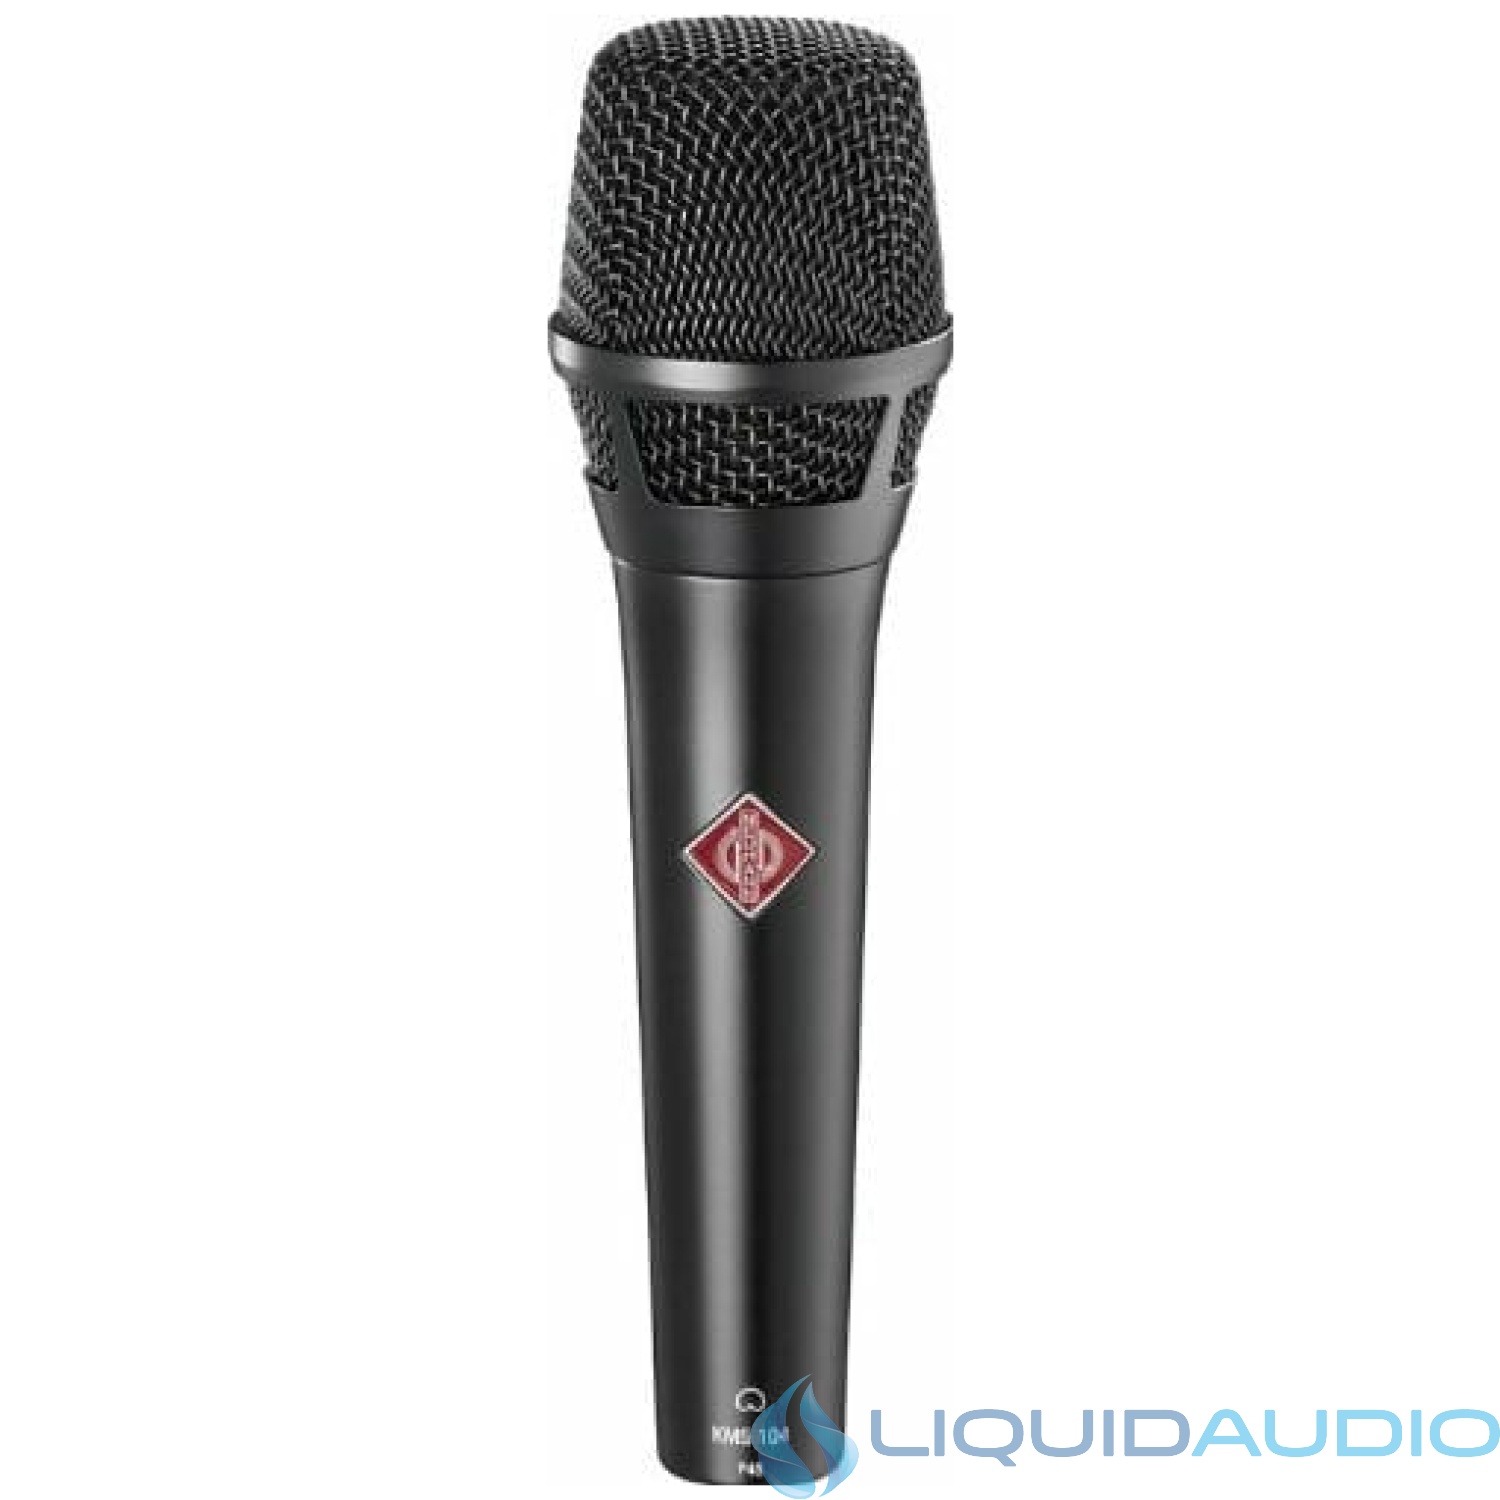 Neumann KMS 104 MT Handheld Vocal Condenser Microphone Black